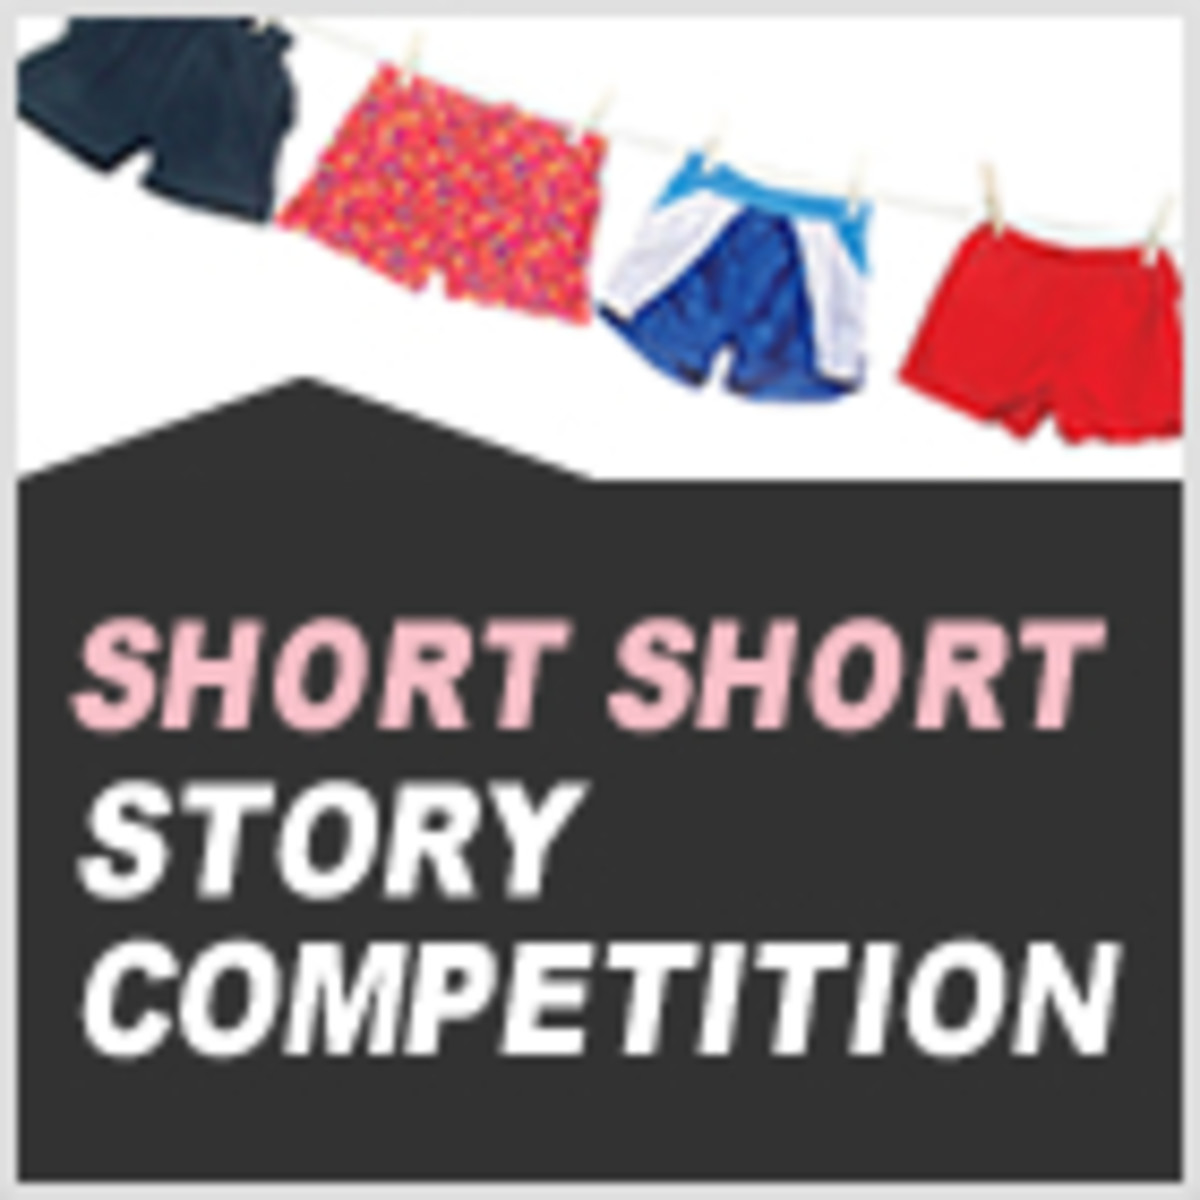  Enter the Writer's Digest Short Short Competition Deadline: November 15